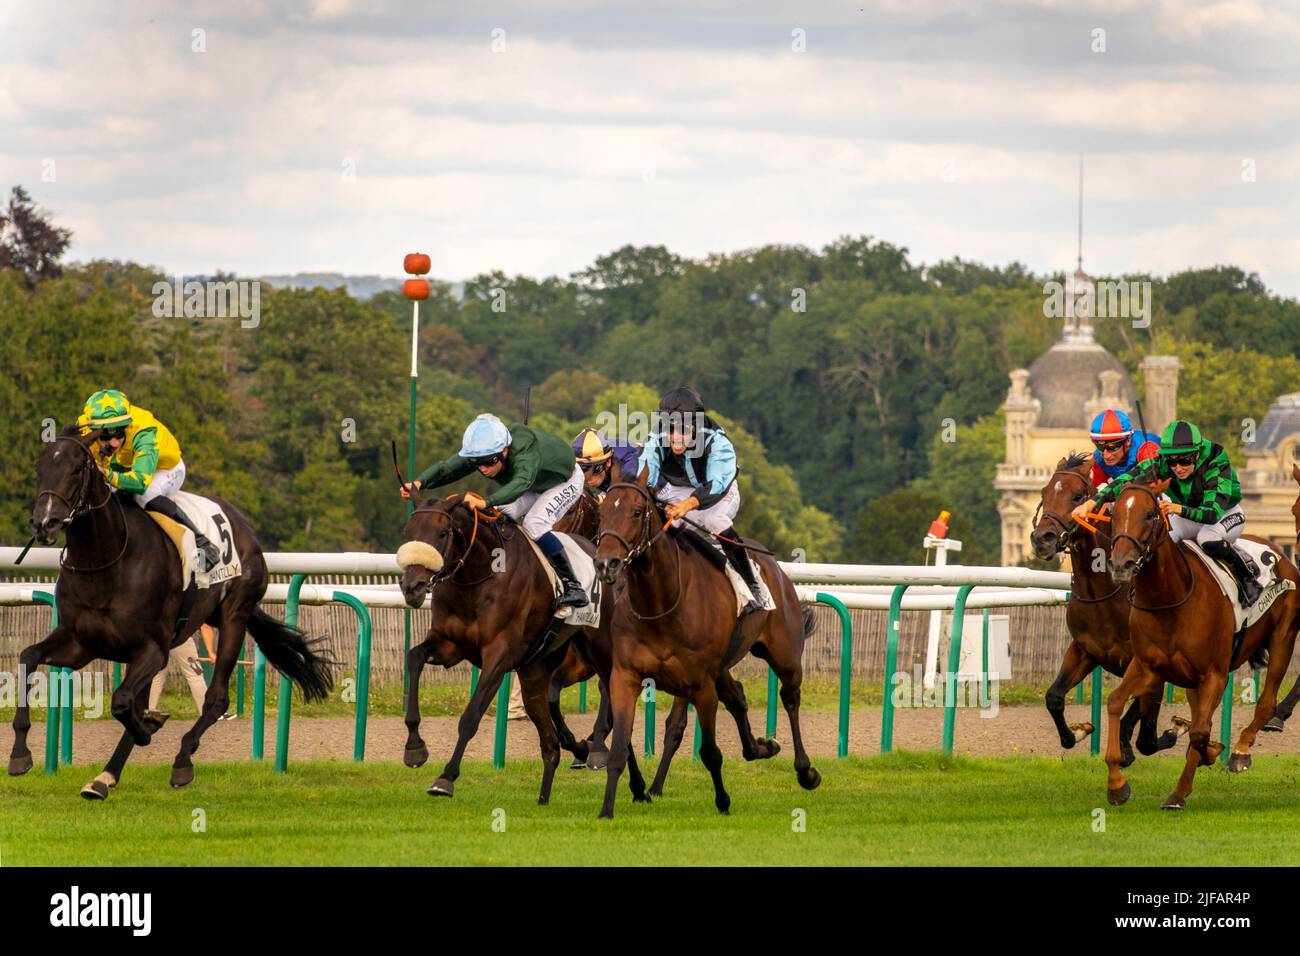 Corsa di cavalli vicino al castello di Chantilly, Francia. Foto Stock